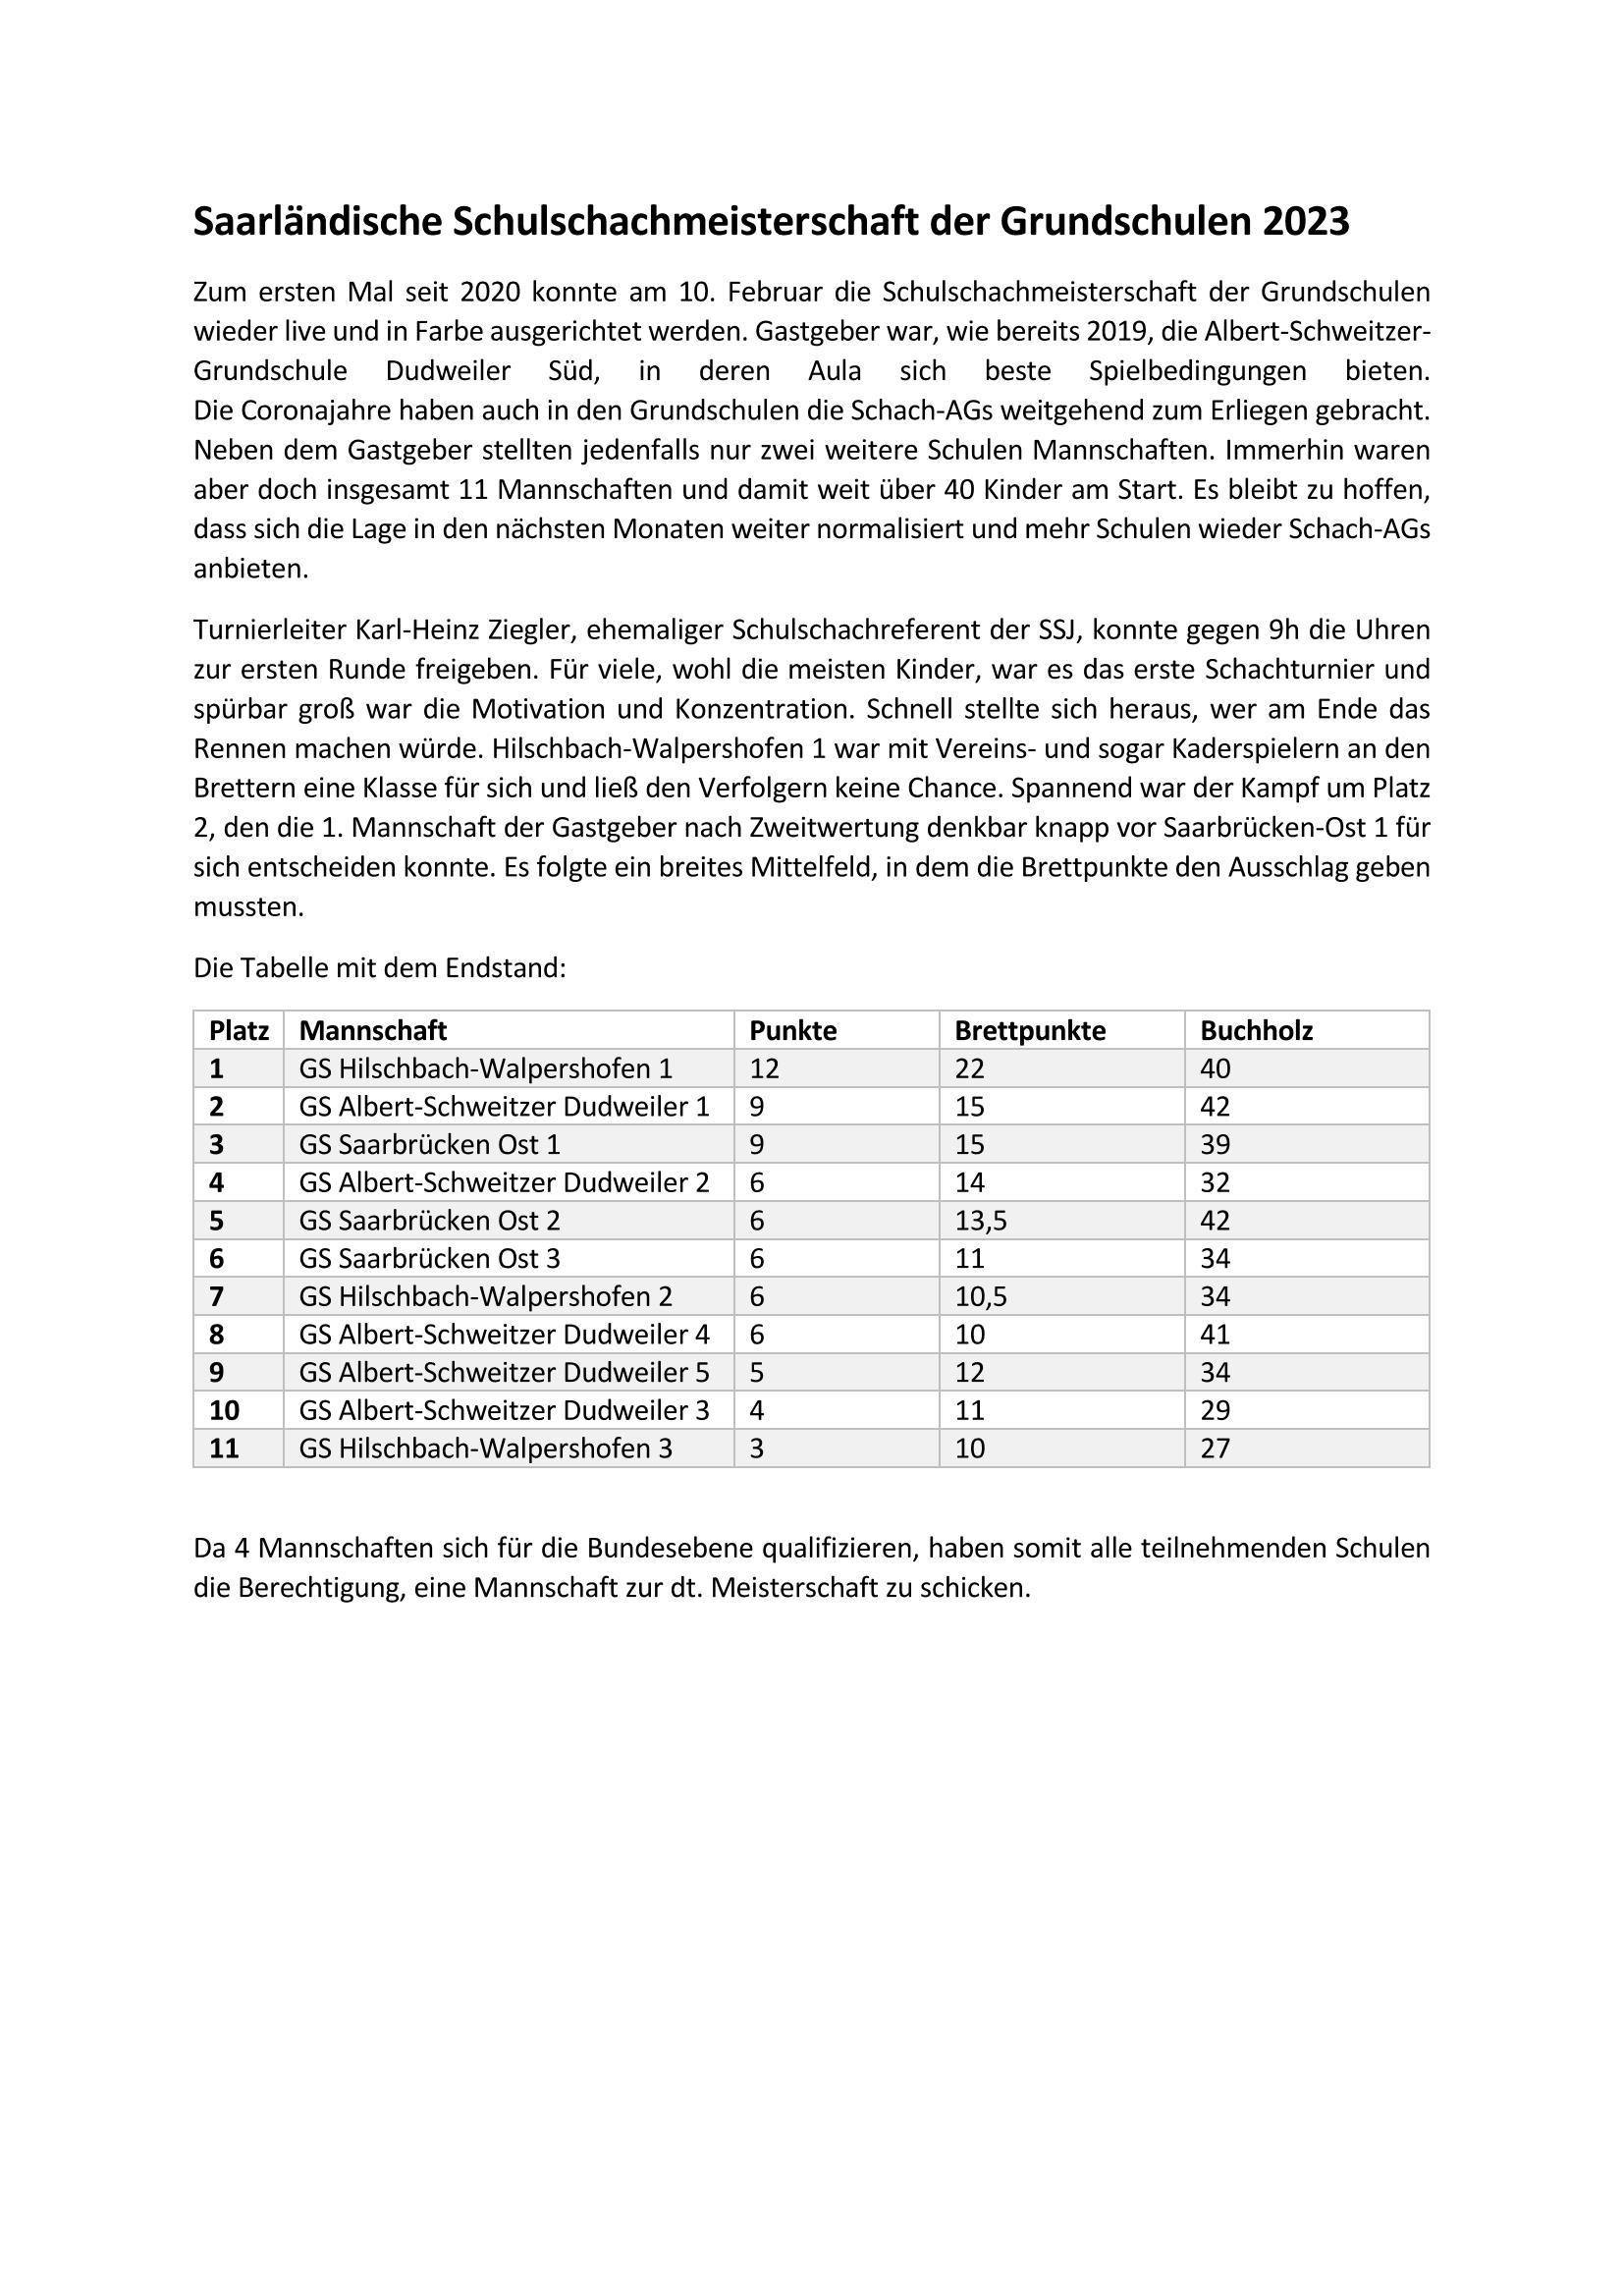 Bericht und Ergebnisse Schulschachmeisterschaften Grundschule Page 1